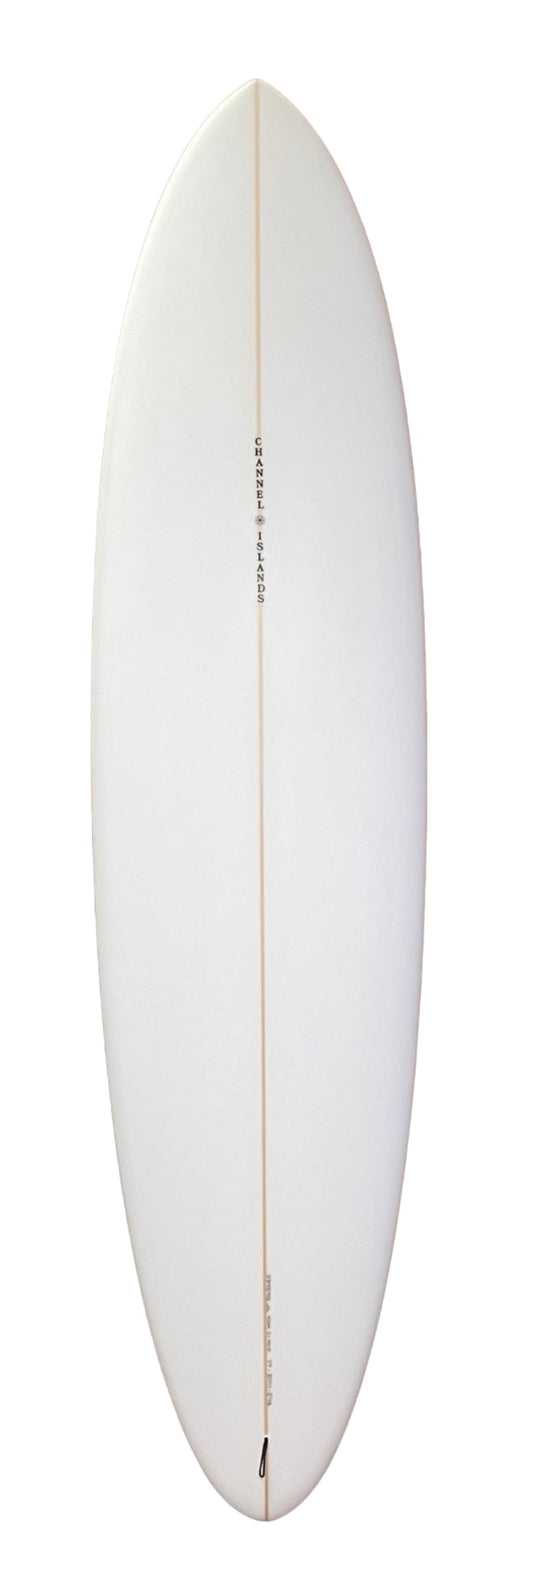 Channel Islands Mid 7'6" Surfboard